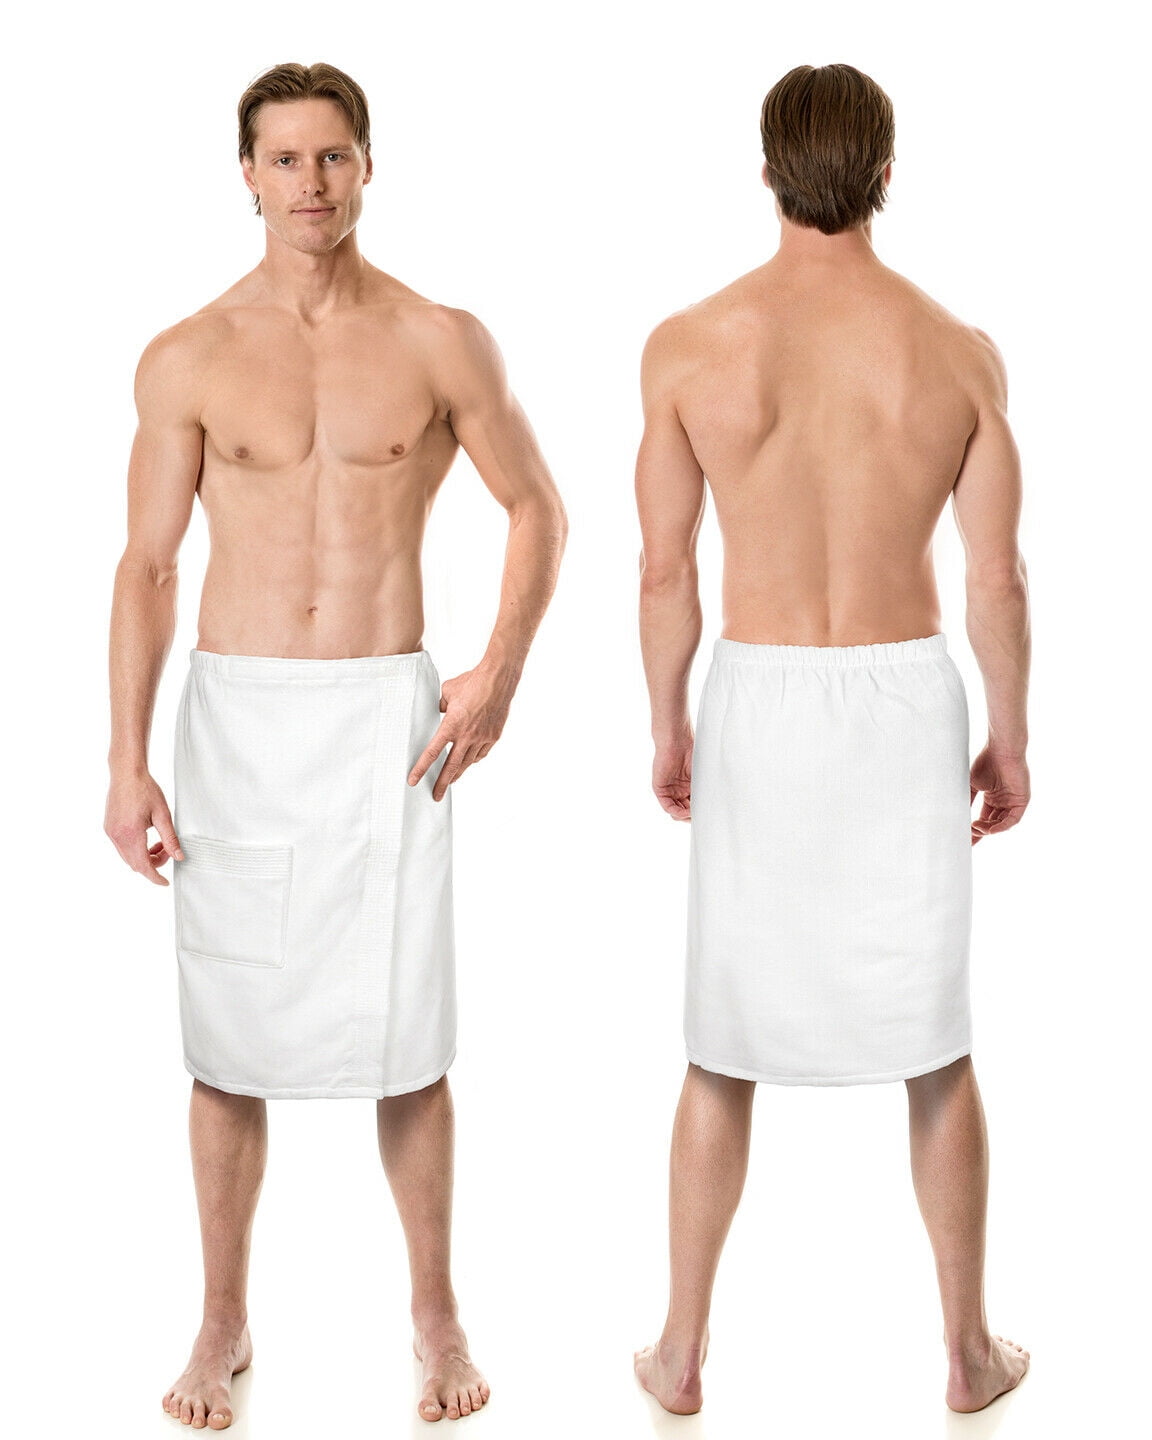 Ben Kaufman 100% Cotton Velour Towels - Large Cotton Towels - Soft